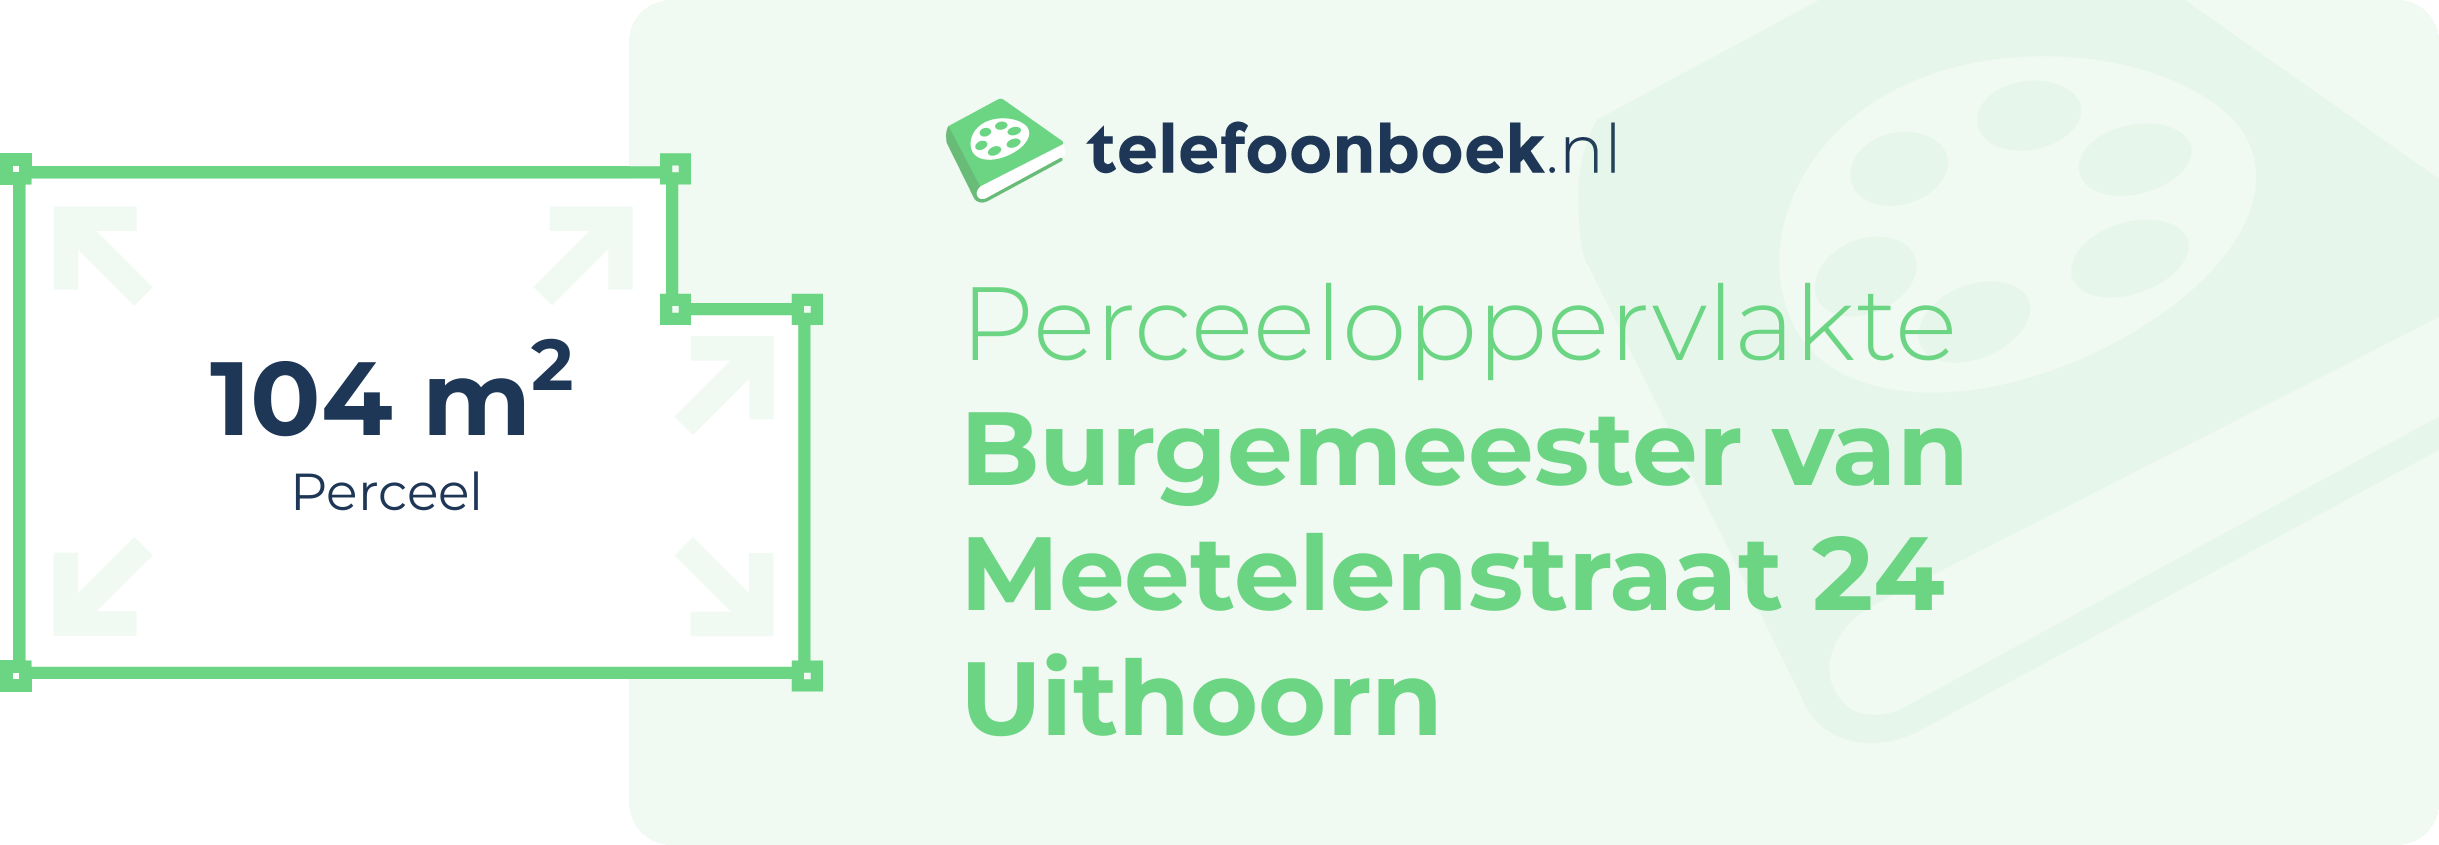 Perceeloppervlakte Burgemeester Van Meetelenstraat 24 Uithoorn